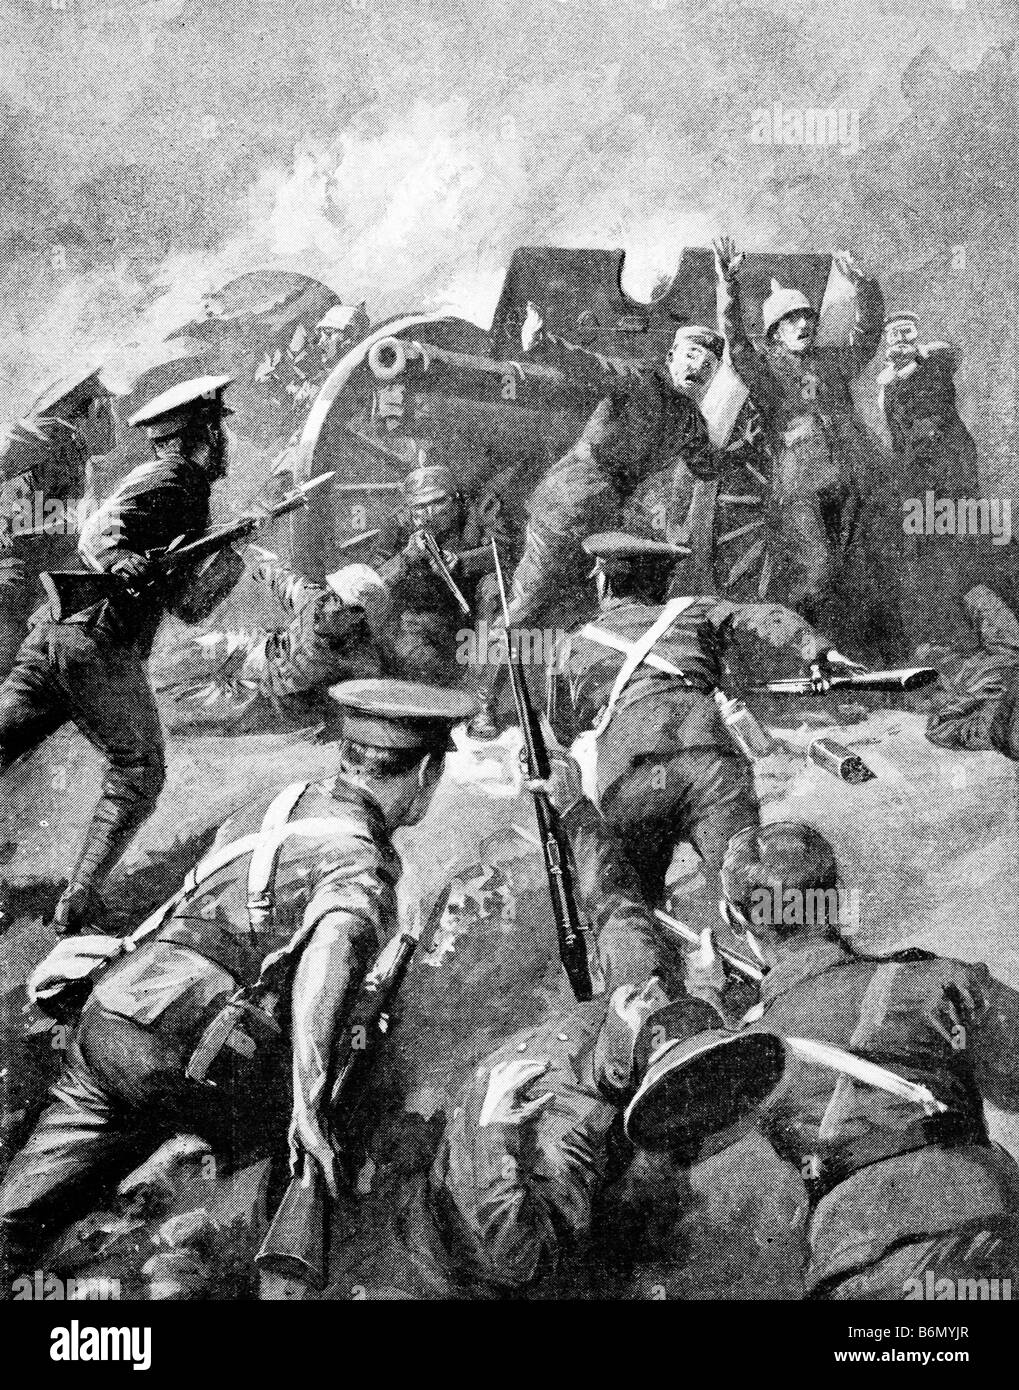 La Seconde Guerre mondiale contemporaine une illustration d'un abandon de l'équipage de l'artillerie allemande dans le visage d'une accusation par des soldats alliés. Banque D'Images